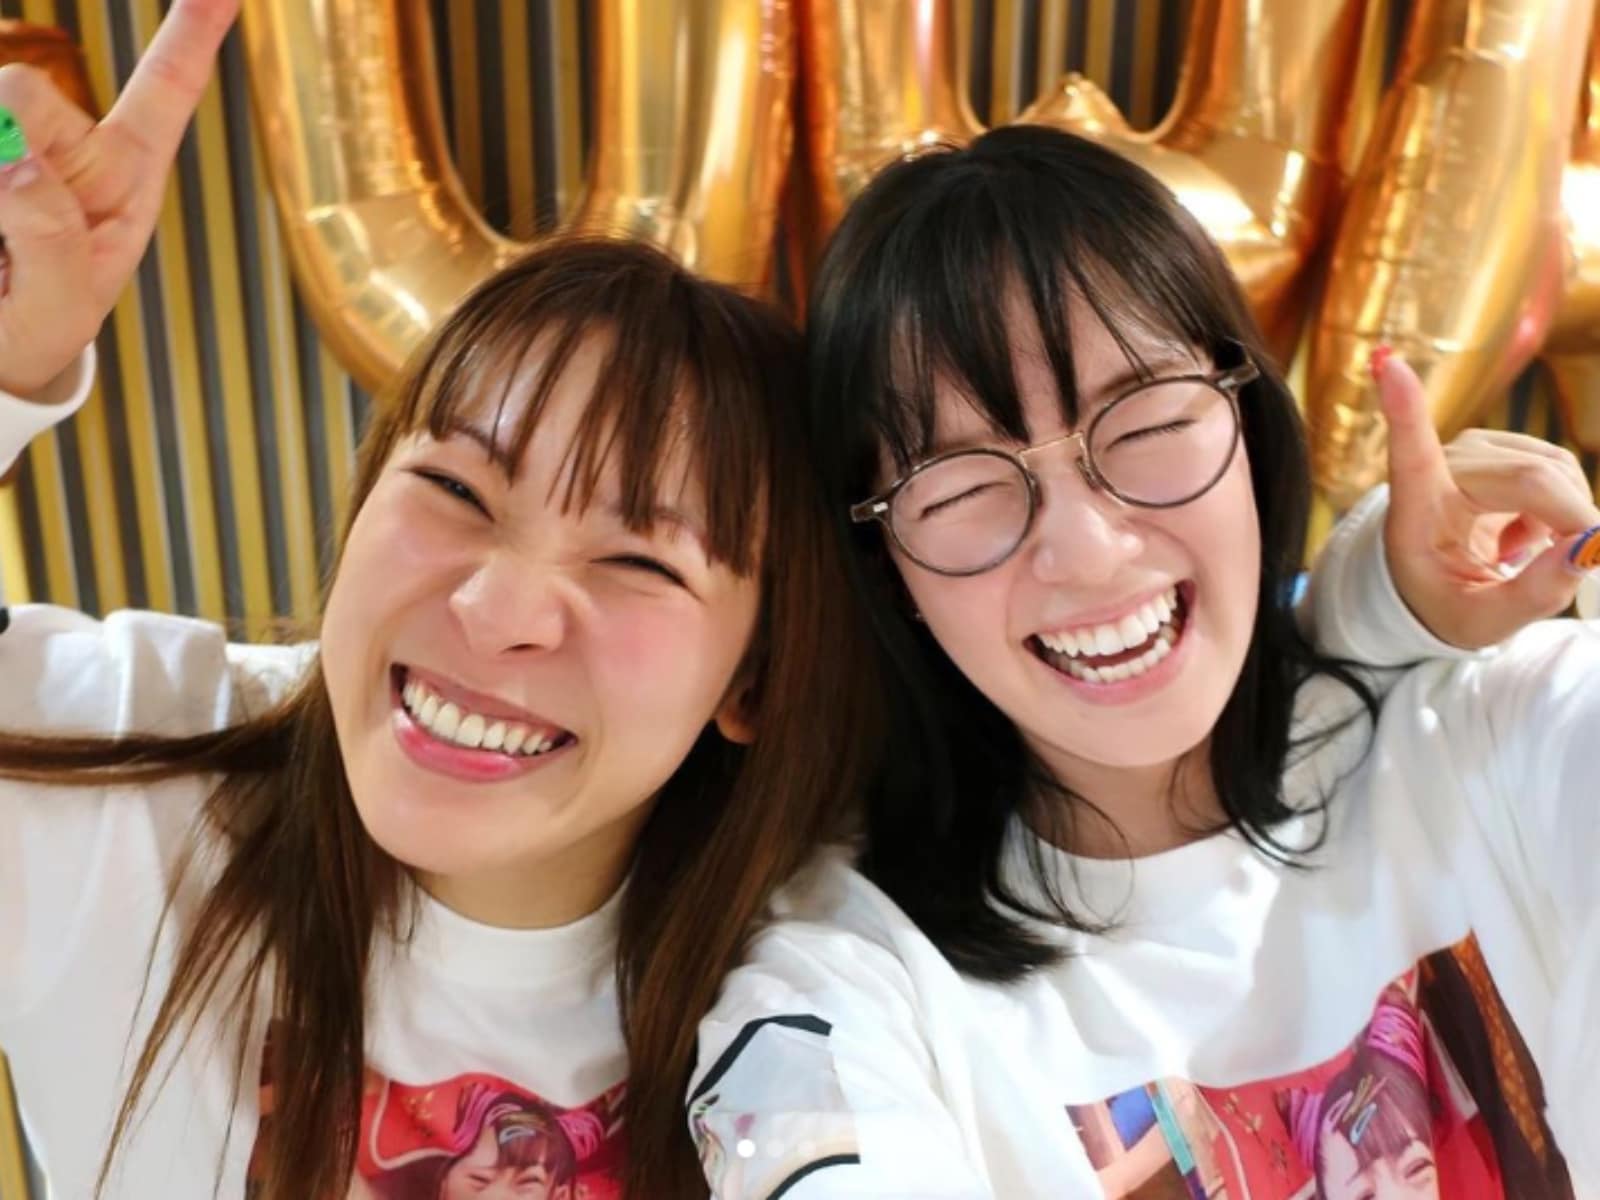 「メッチャ素敵な笑顔」佐藤栞里、フワちゃんとの仲良しツーショットを公開！ 「二人ともすごく可愛い」